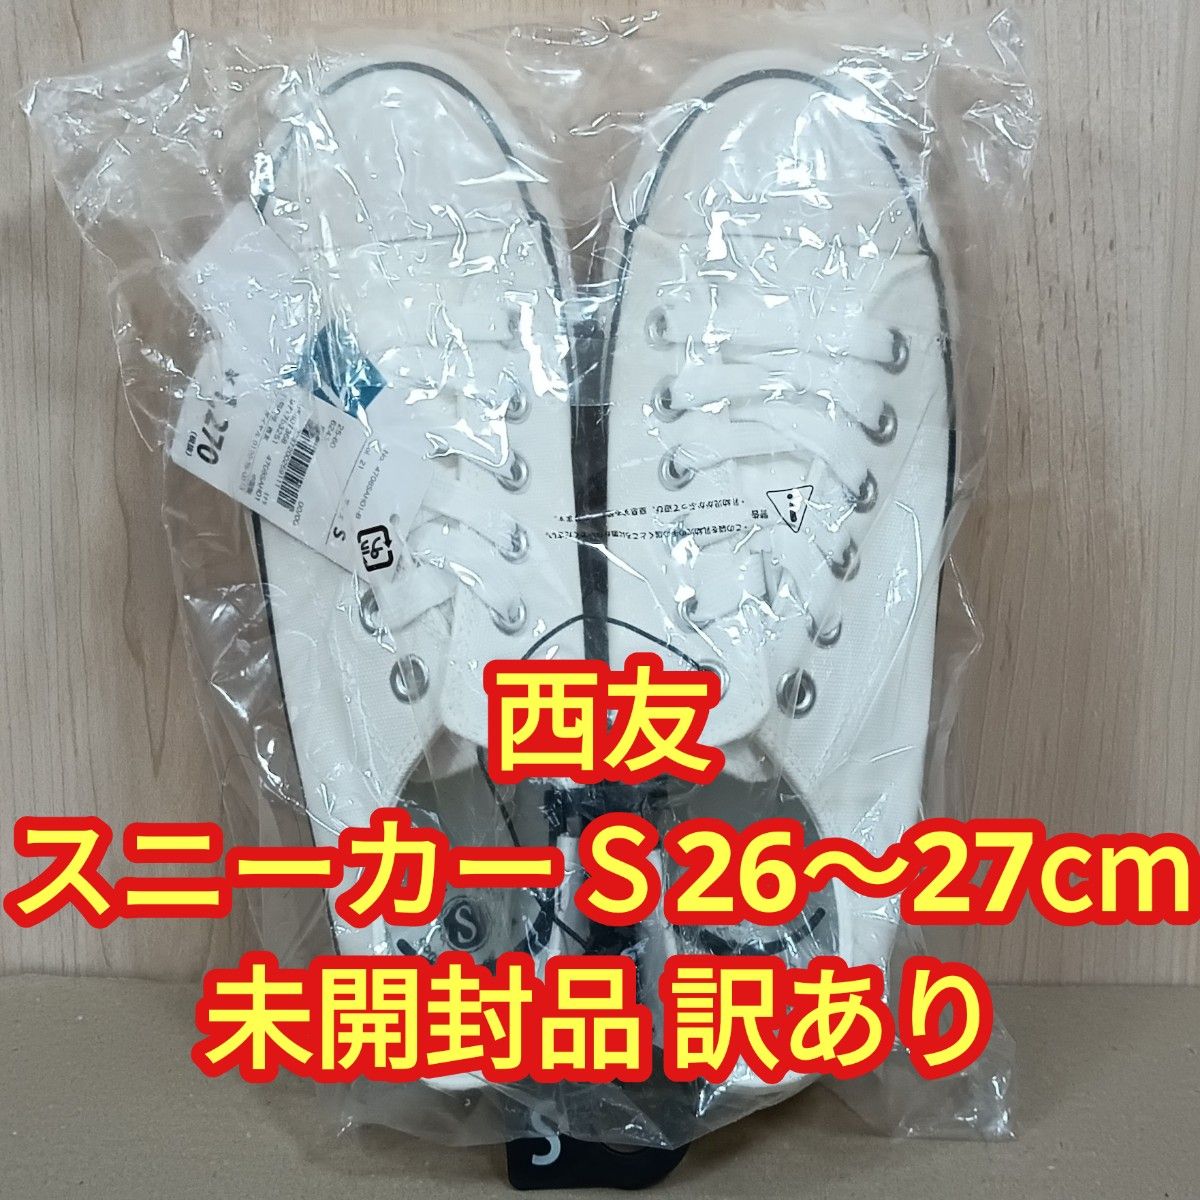 【未開封品・訳あり】西友 SEIYU メンズ スニーカー Sサイズ 26〜27cm ホワイト